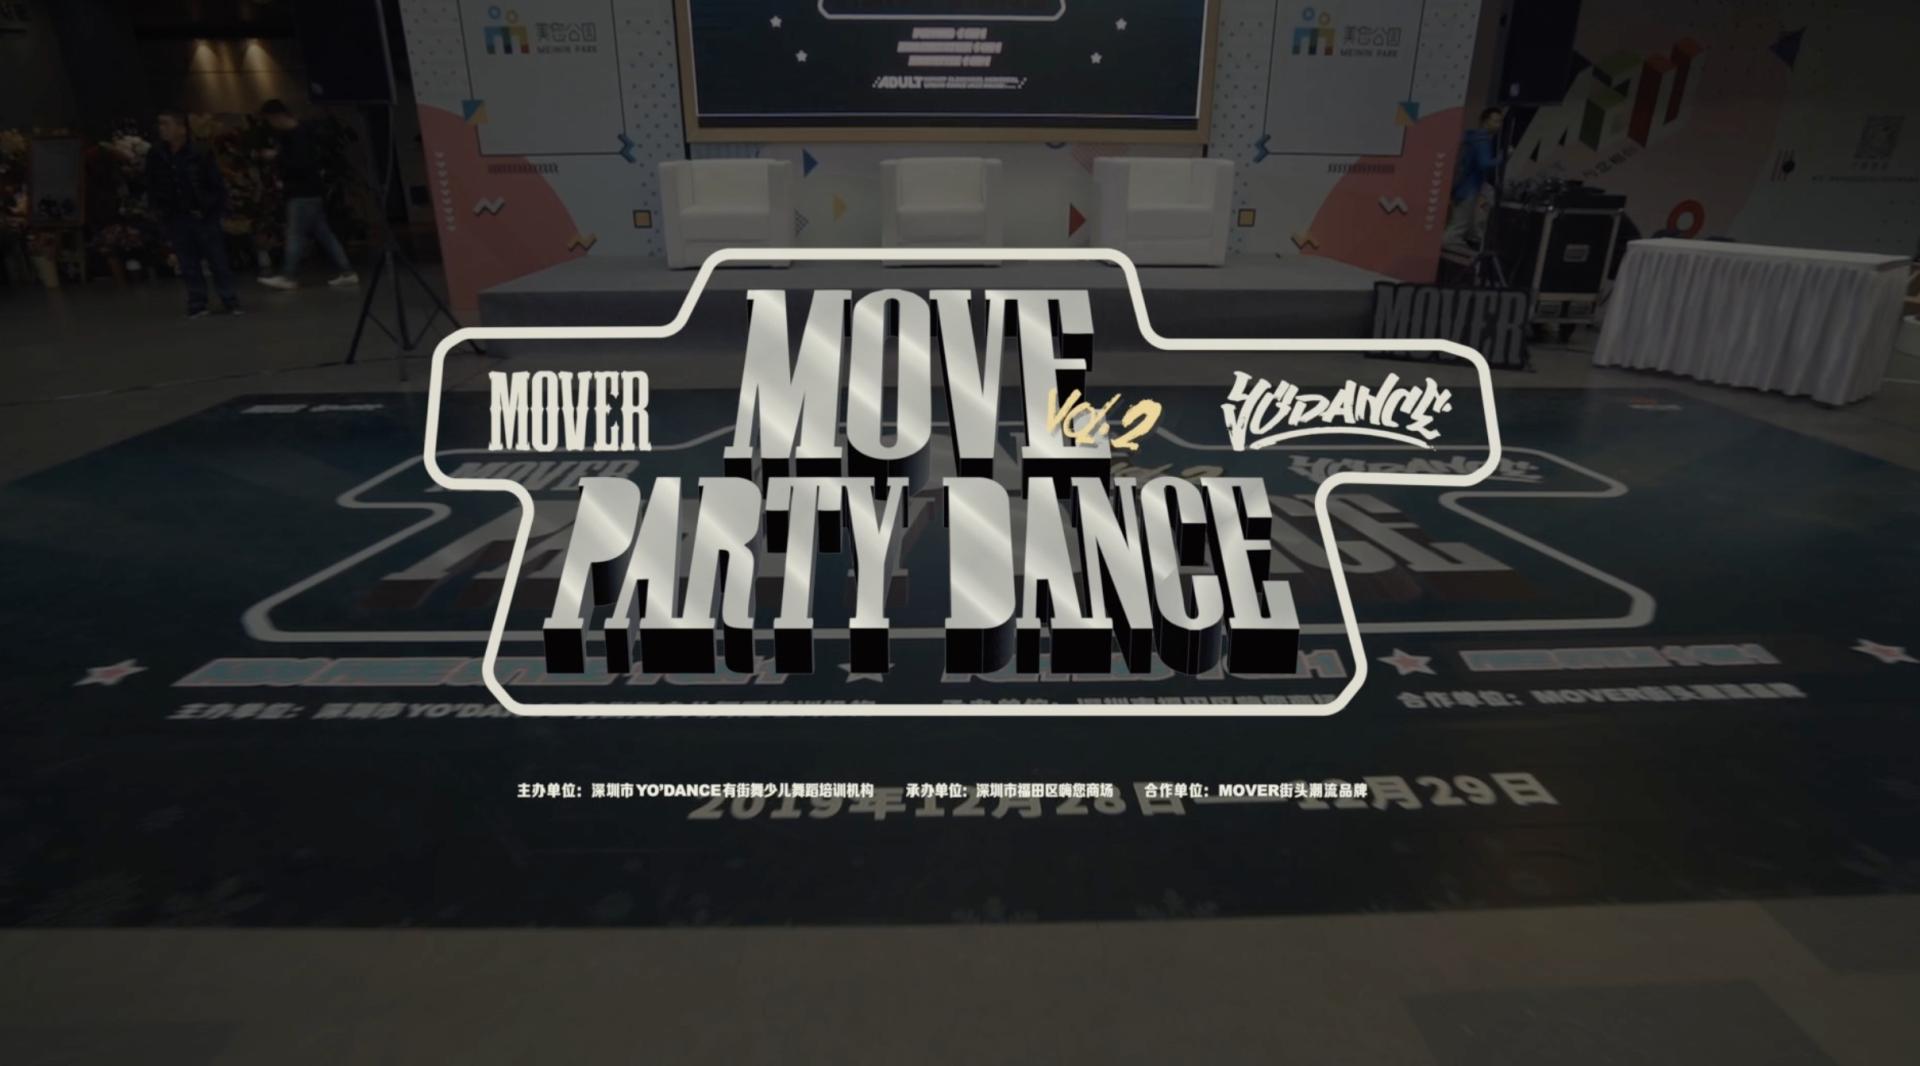 Recap | MovePartydance Vol.2 | 深圳 | YoDance & Mover